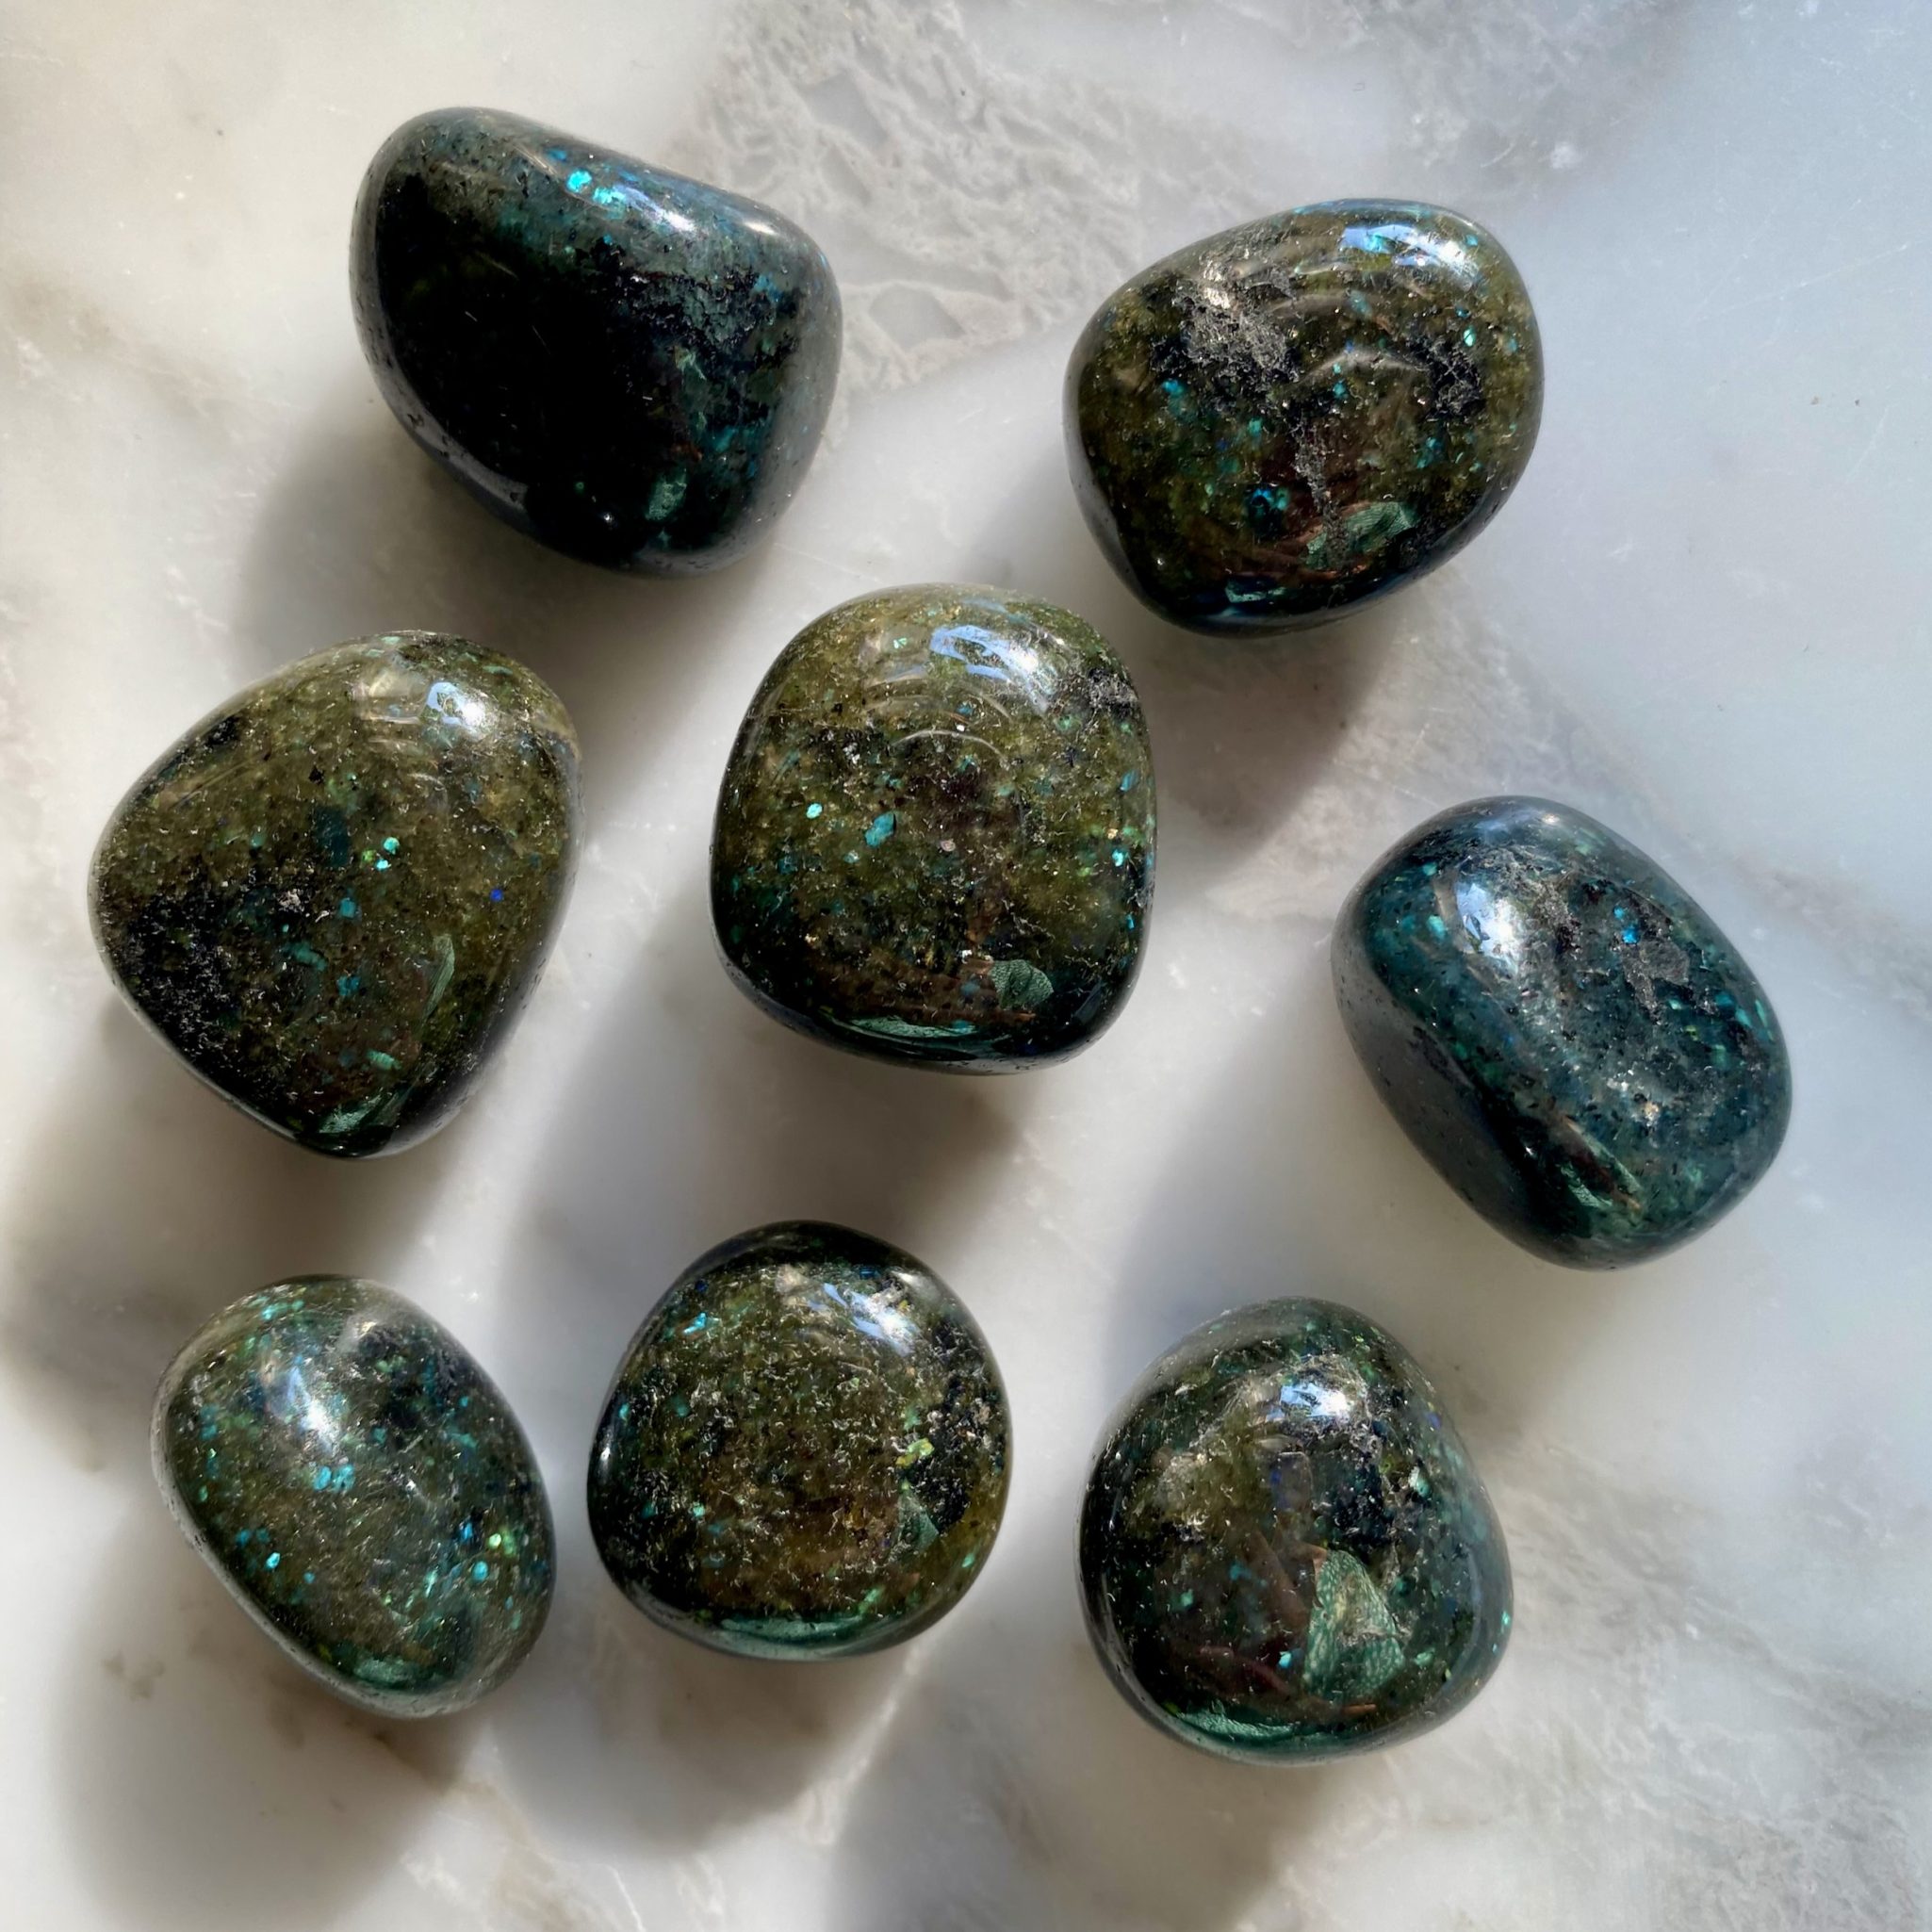 galaxite tumbled pocket stone - galaxite roulée pierre de poche